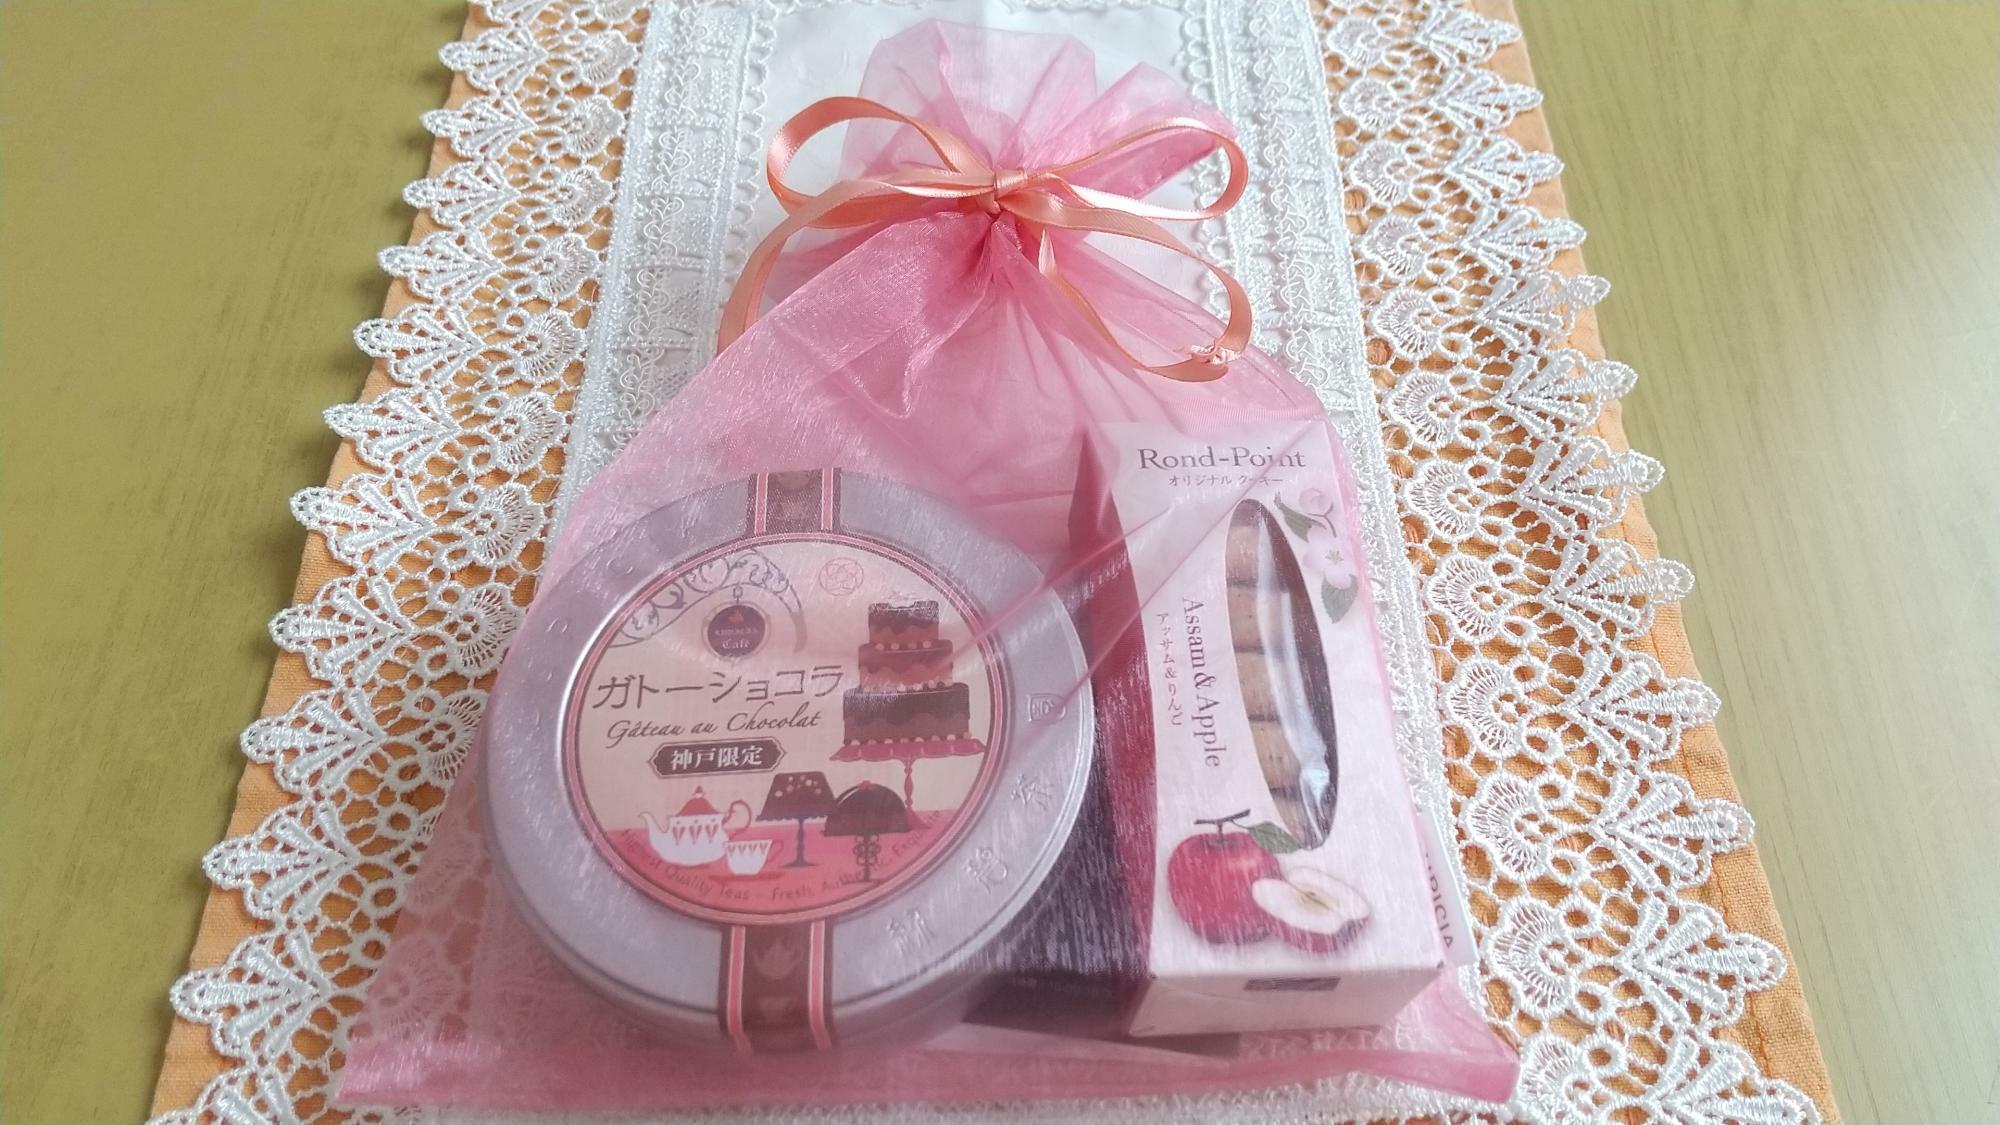 ルピシア神戸限定のお茶「ガトーショコラ」をピンク色の巾着でラッピング